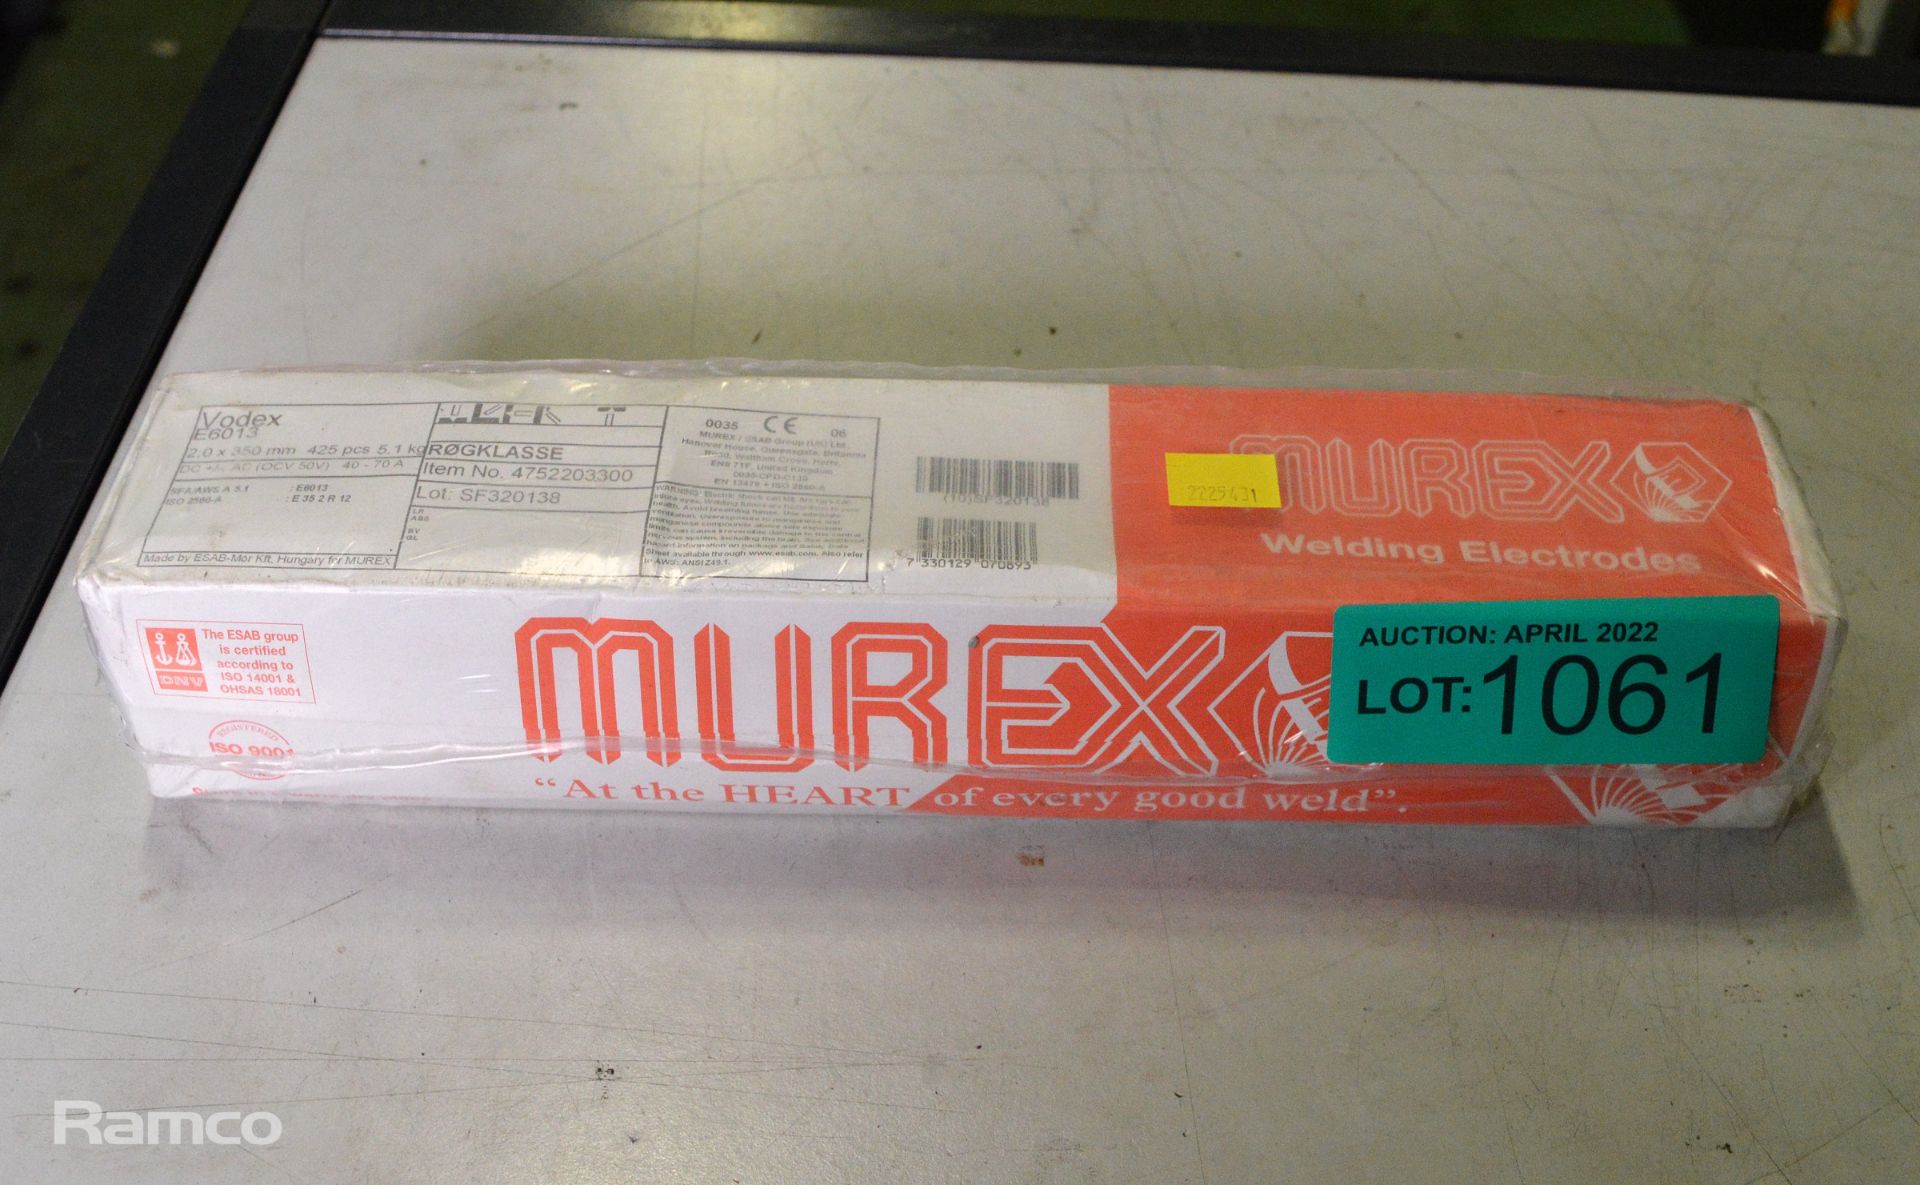 Murex Vodex E6013 Welding Electrodes 2.0 x 350mm